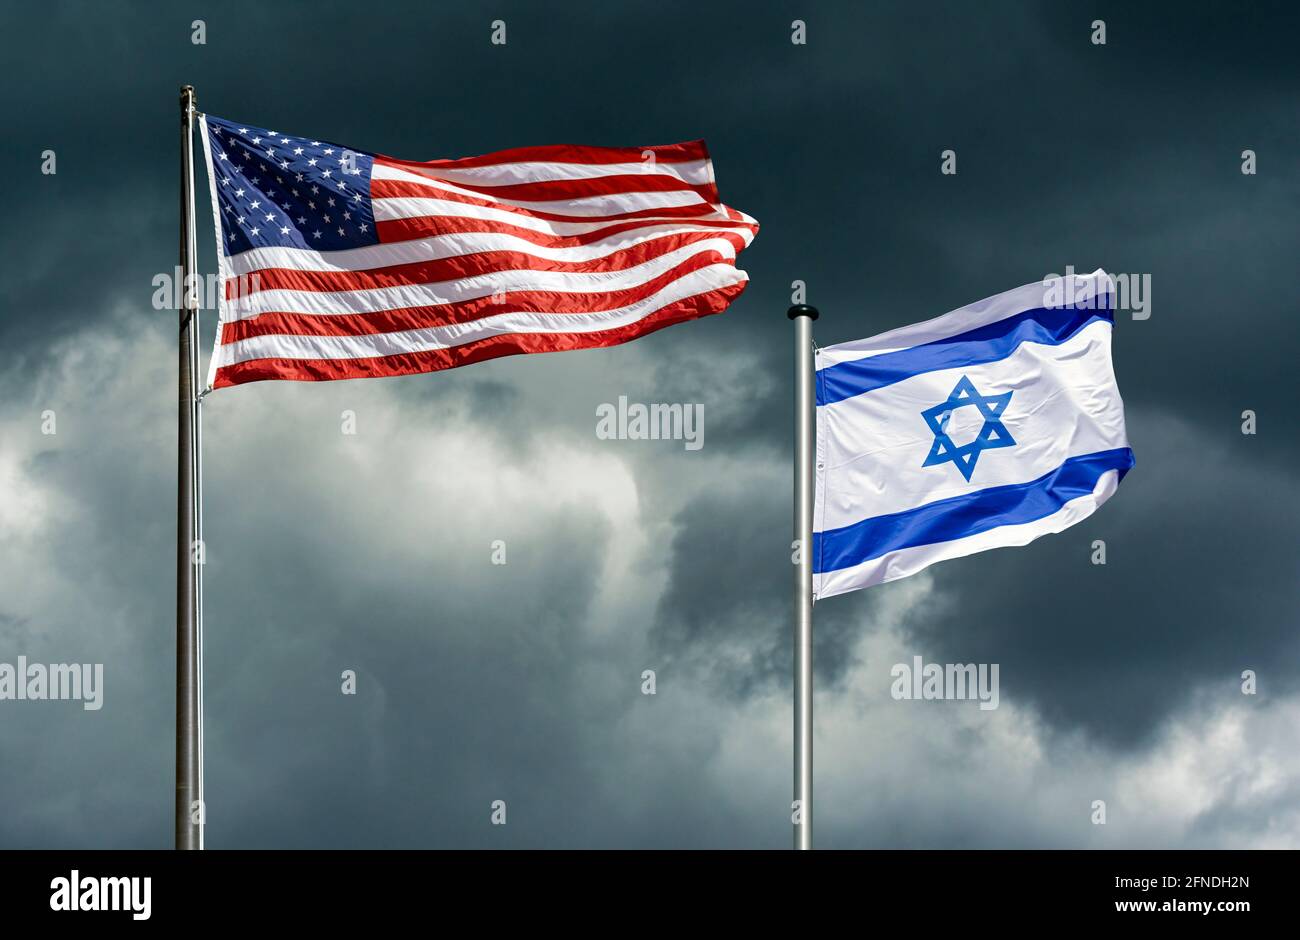 Staatsflaggen der USA und Israels flattern vor einem dunklen, stürmischen Himmel, symbolisches Bild für die Partnerschaft zwischen Israel und den USA in schwierigen Zeiten Stockfoto